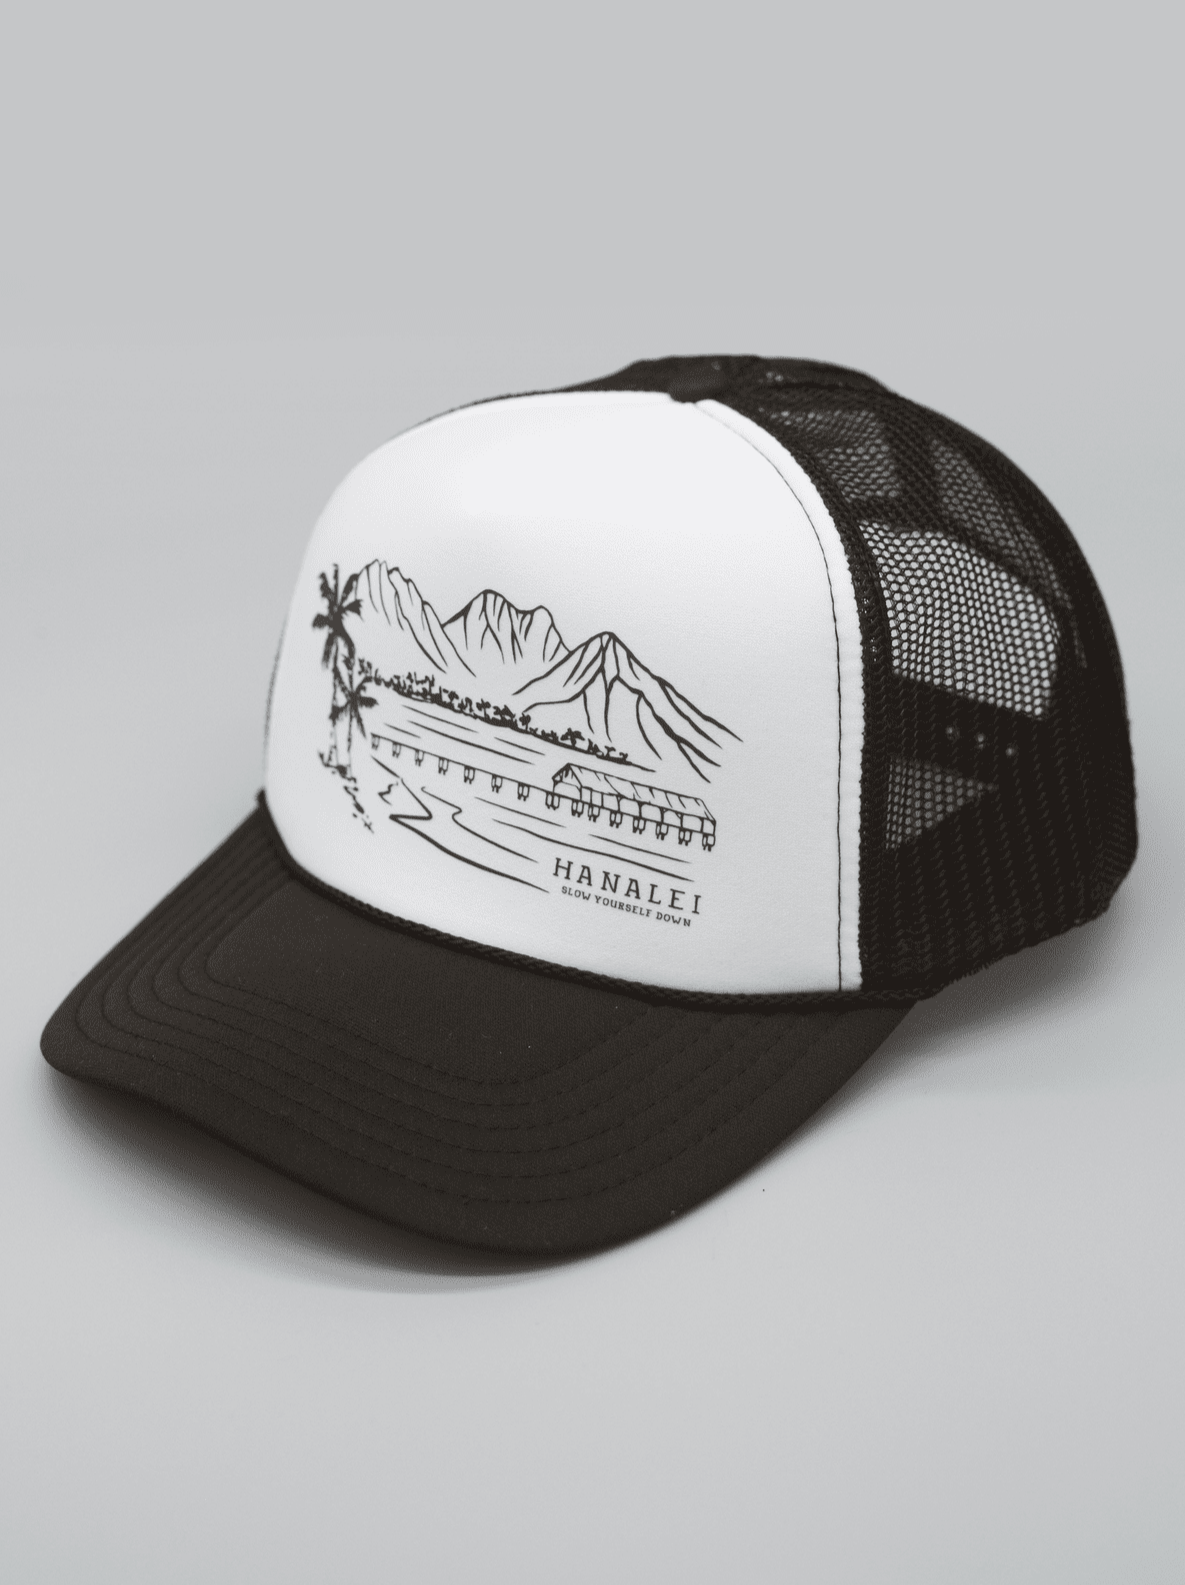 Hanalei Bay Trucker Hat Hats - Slow Yourself Down